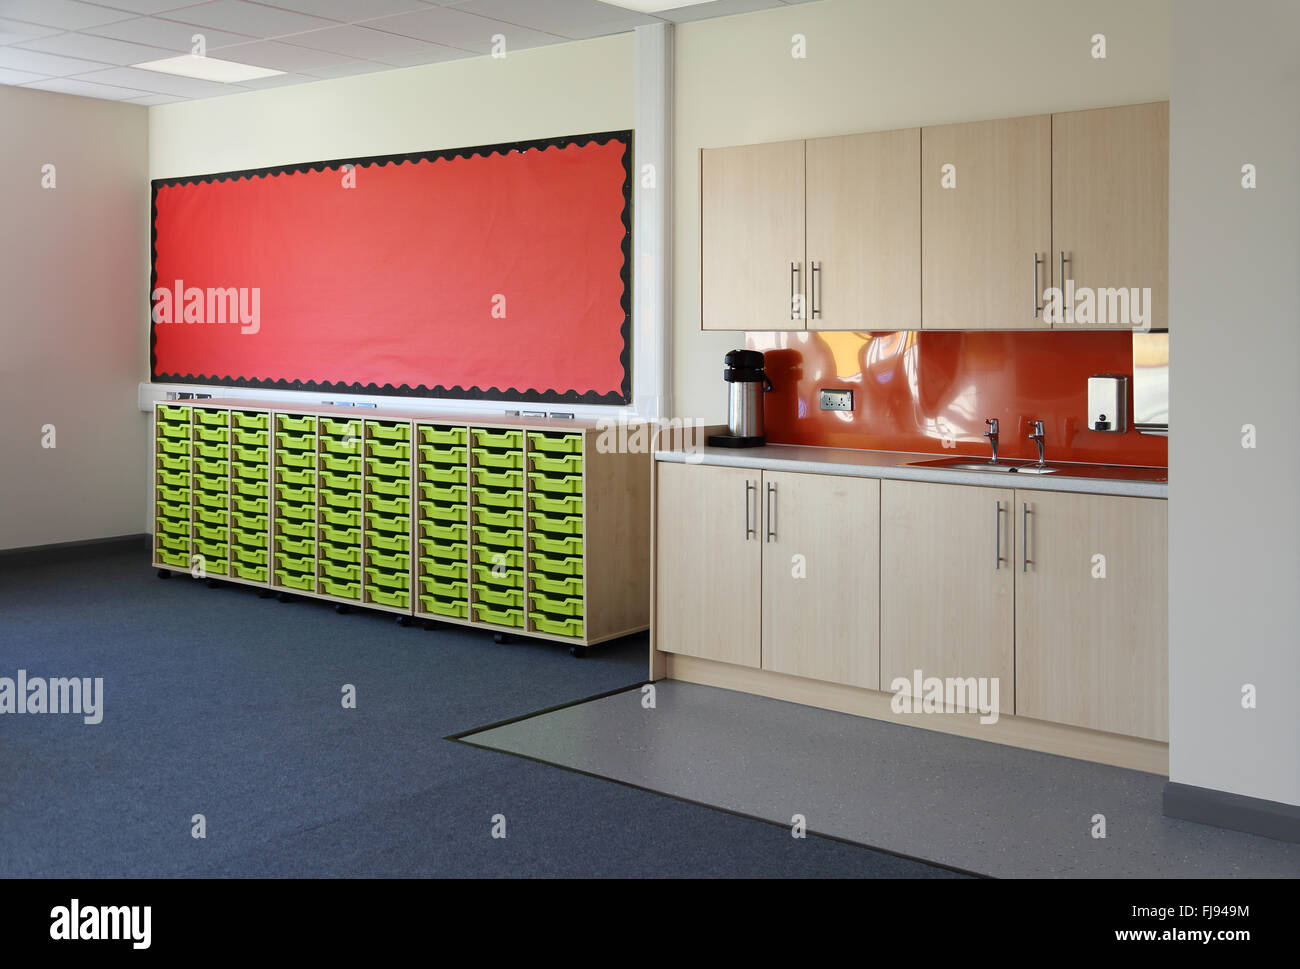 Nassbereich in einer neuen Schulklassenzimmer. Zeigt Waschbecken und Küche-Stil Lagerung plus Schubladen für Schülerinnen und Schüler Stockfoto